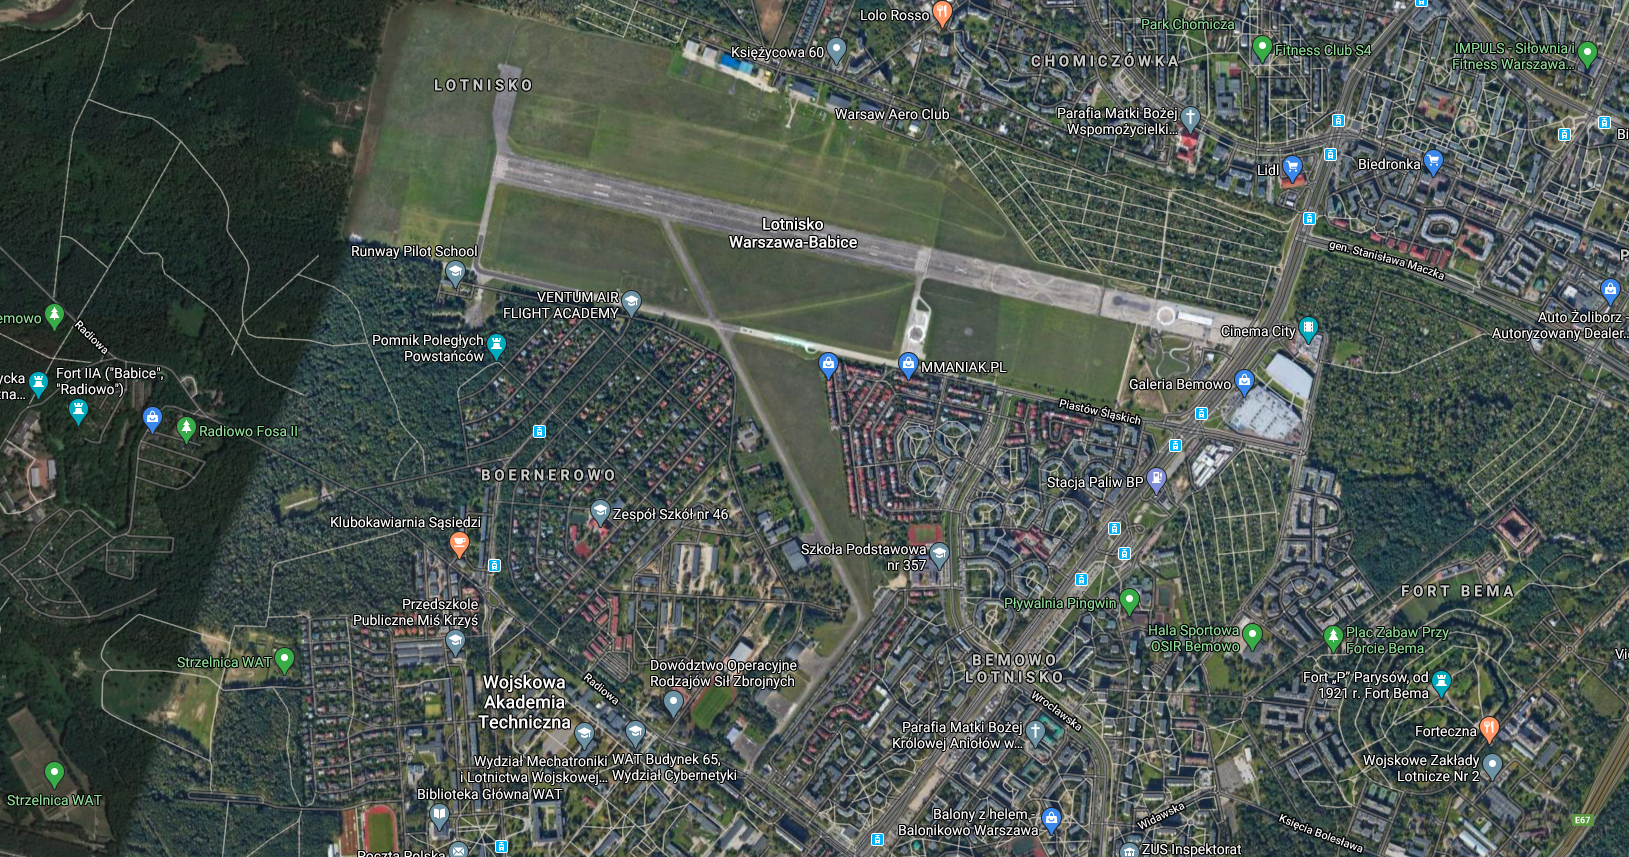 Lotnisko Bemowo, widok z satelity. 2018 rok. Zdjęcie LAC